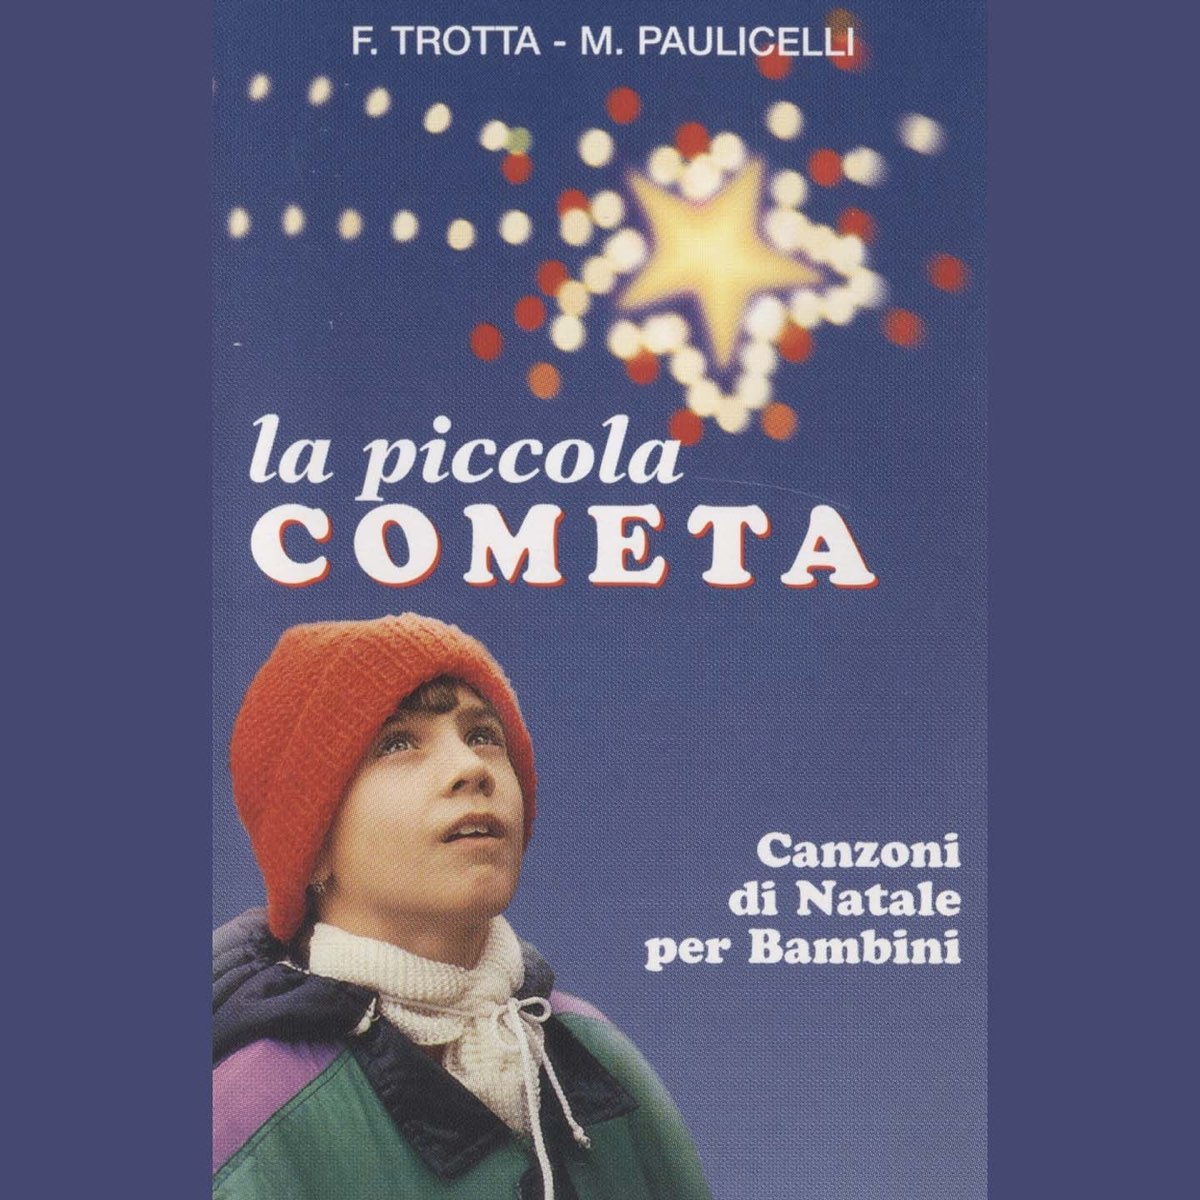 La piccola cometa (Canzoni di Natale per bambini) by Michele Paulicelli &  Francesco Trotta on Apple Music